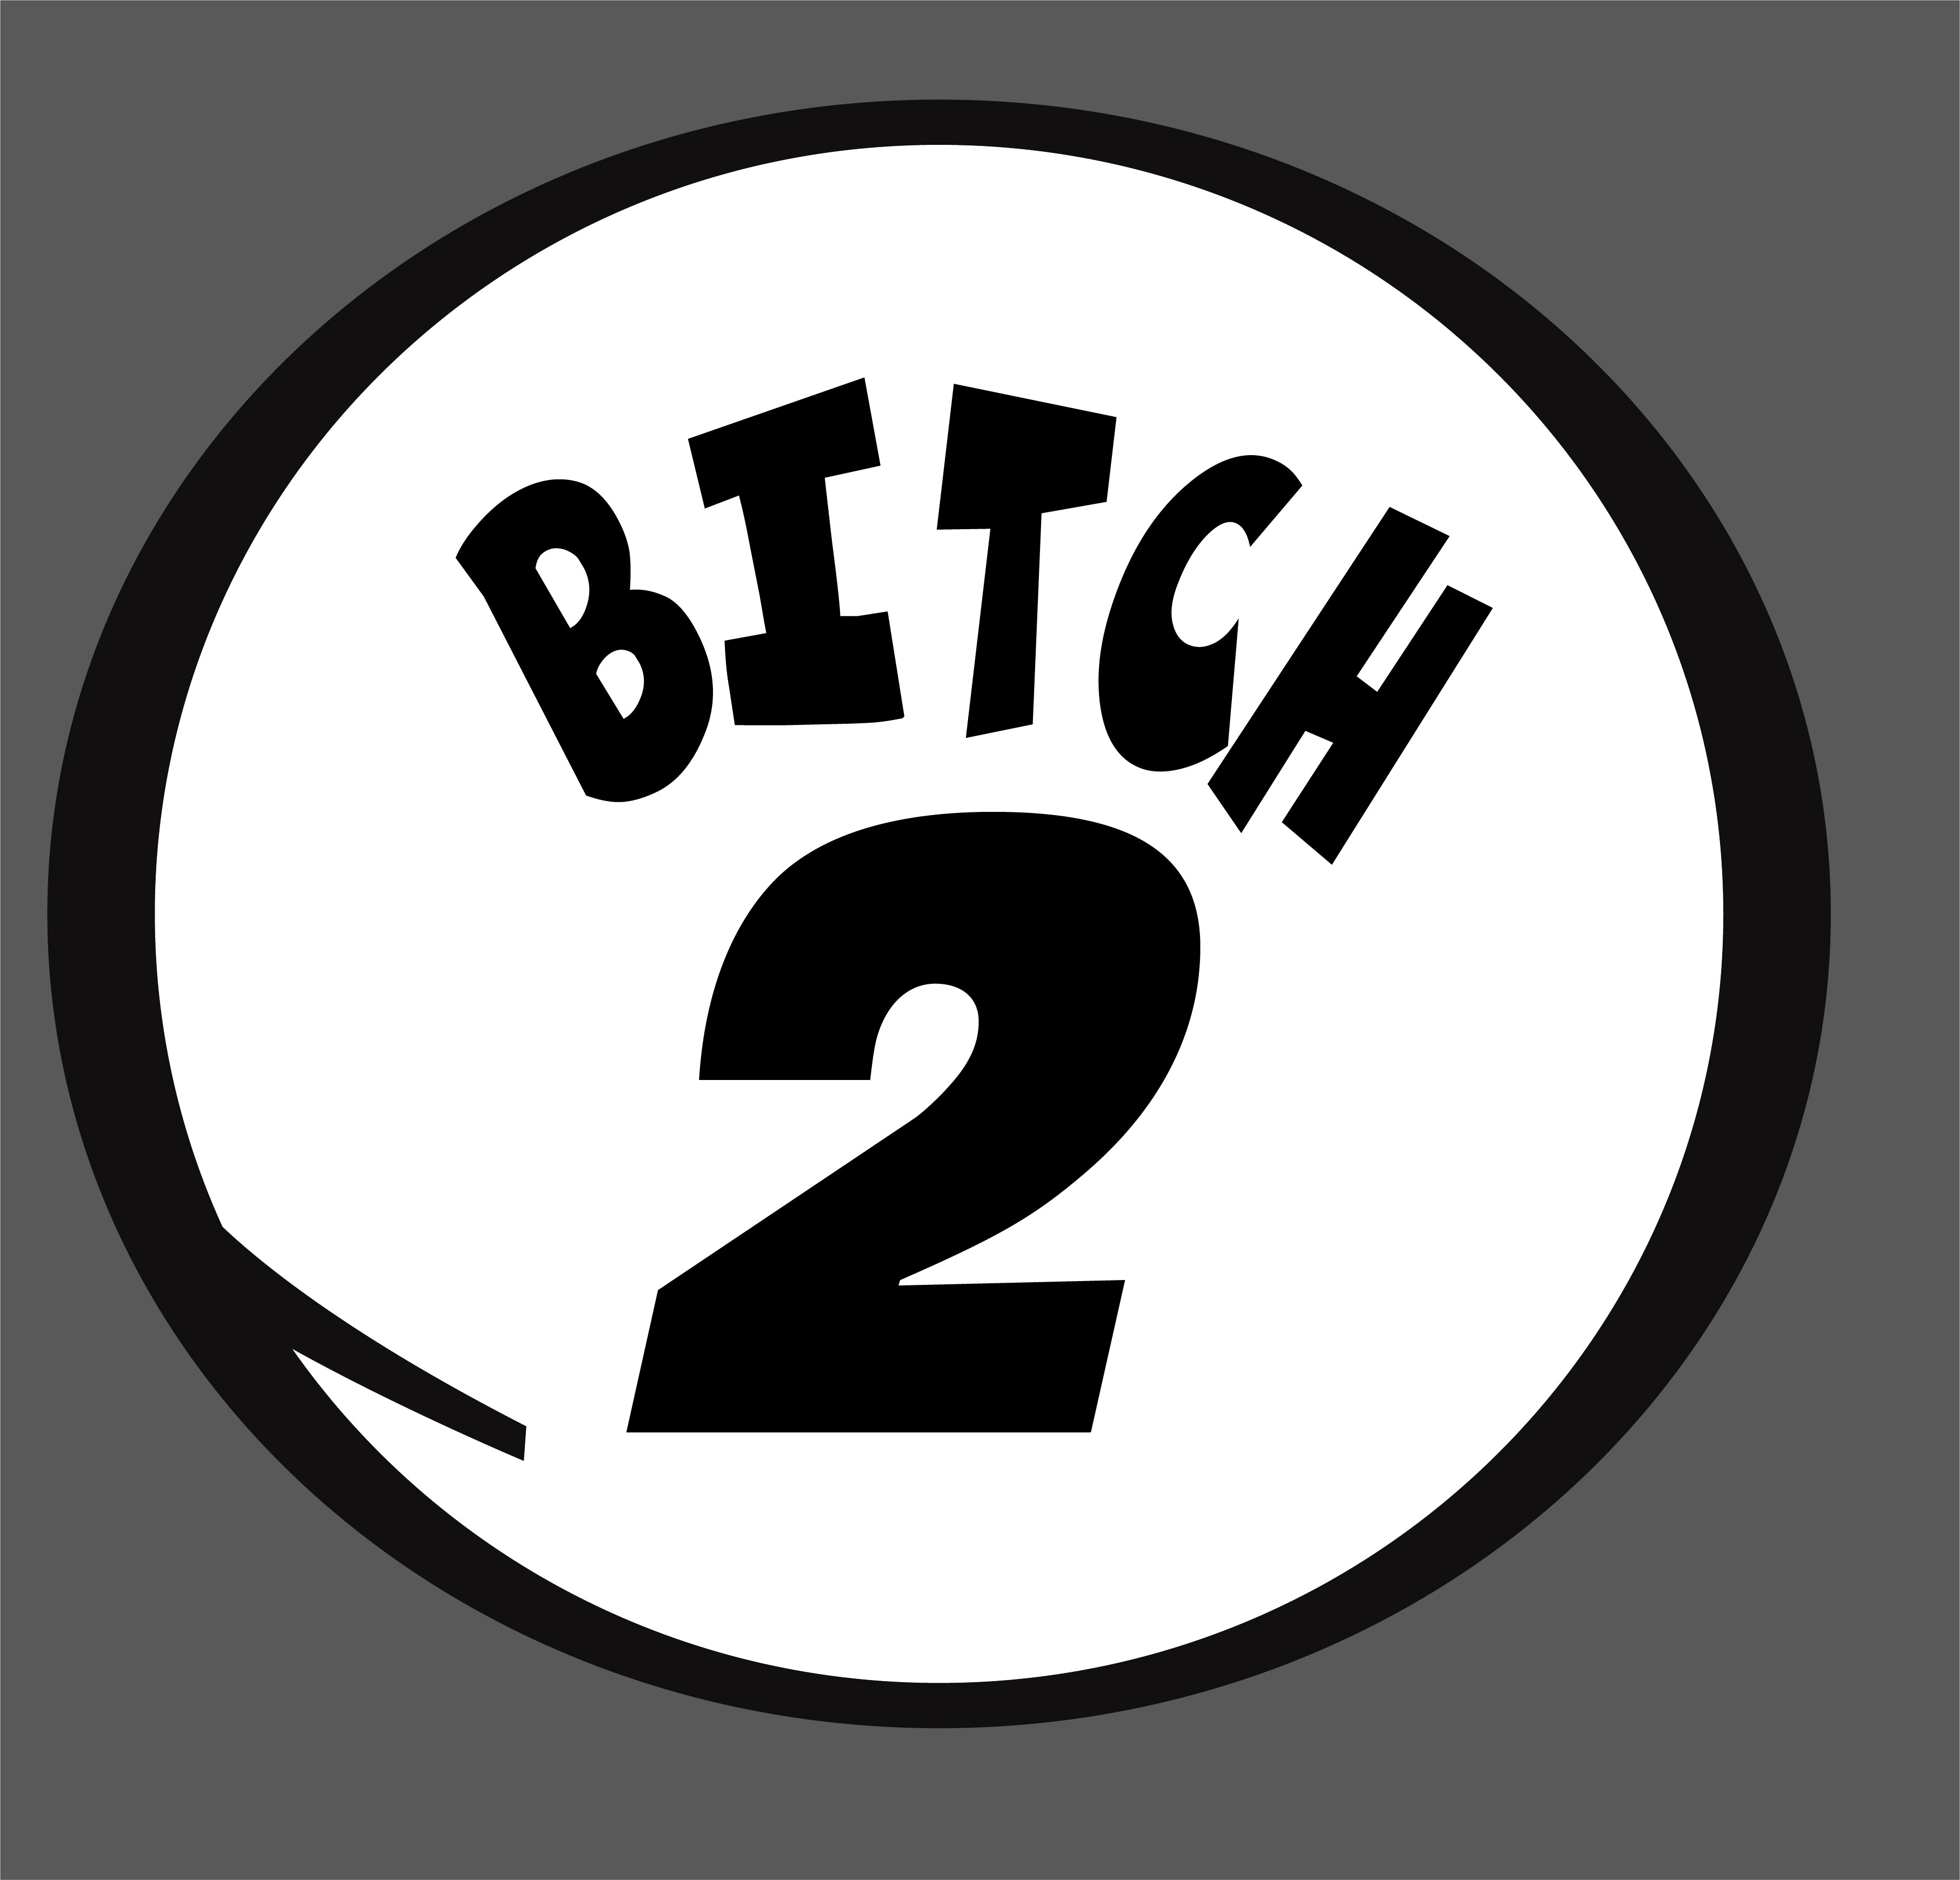 Bitch 2 - FUN - 051